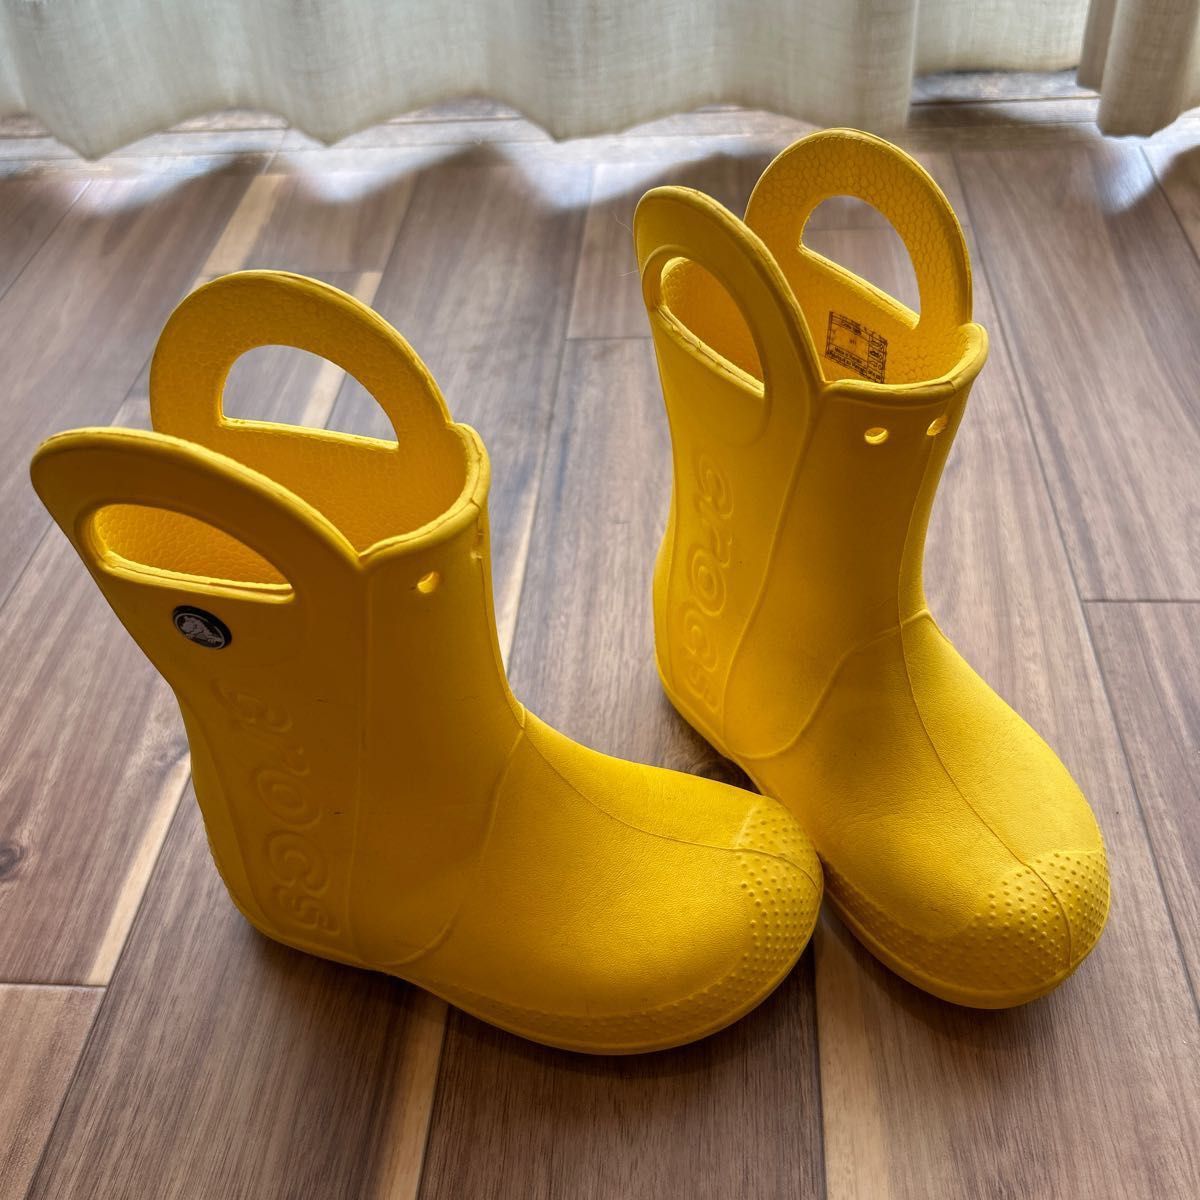 クロックス キッズ レインブーツ 黄色 C11 18cm - 長靴・レインシューズ